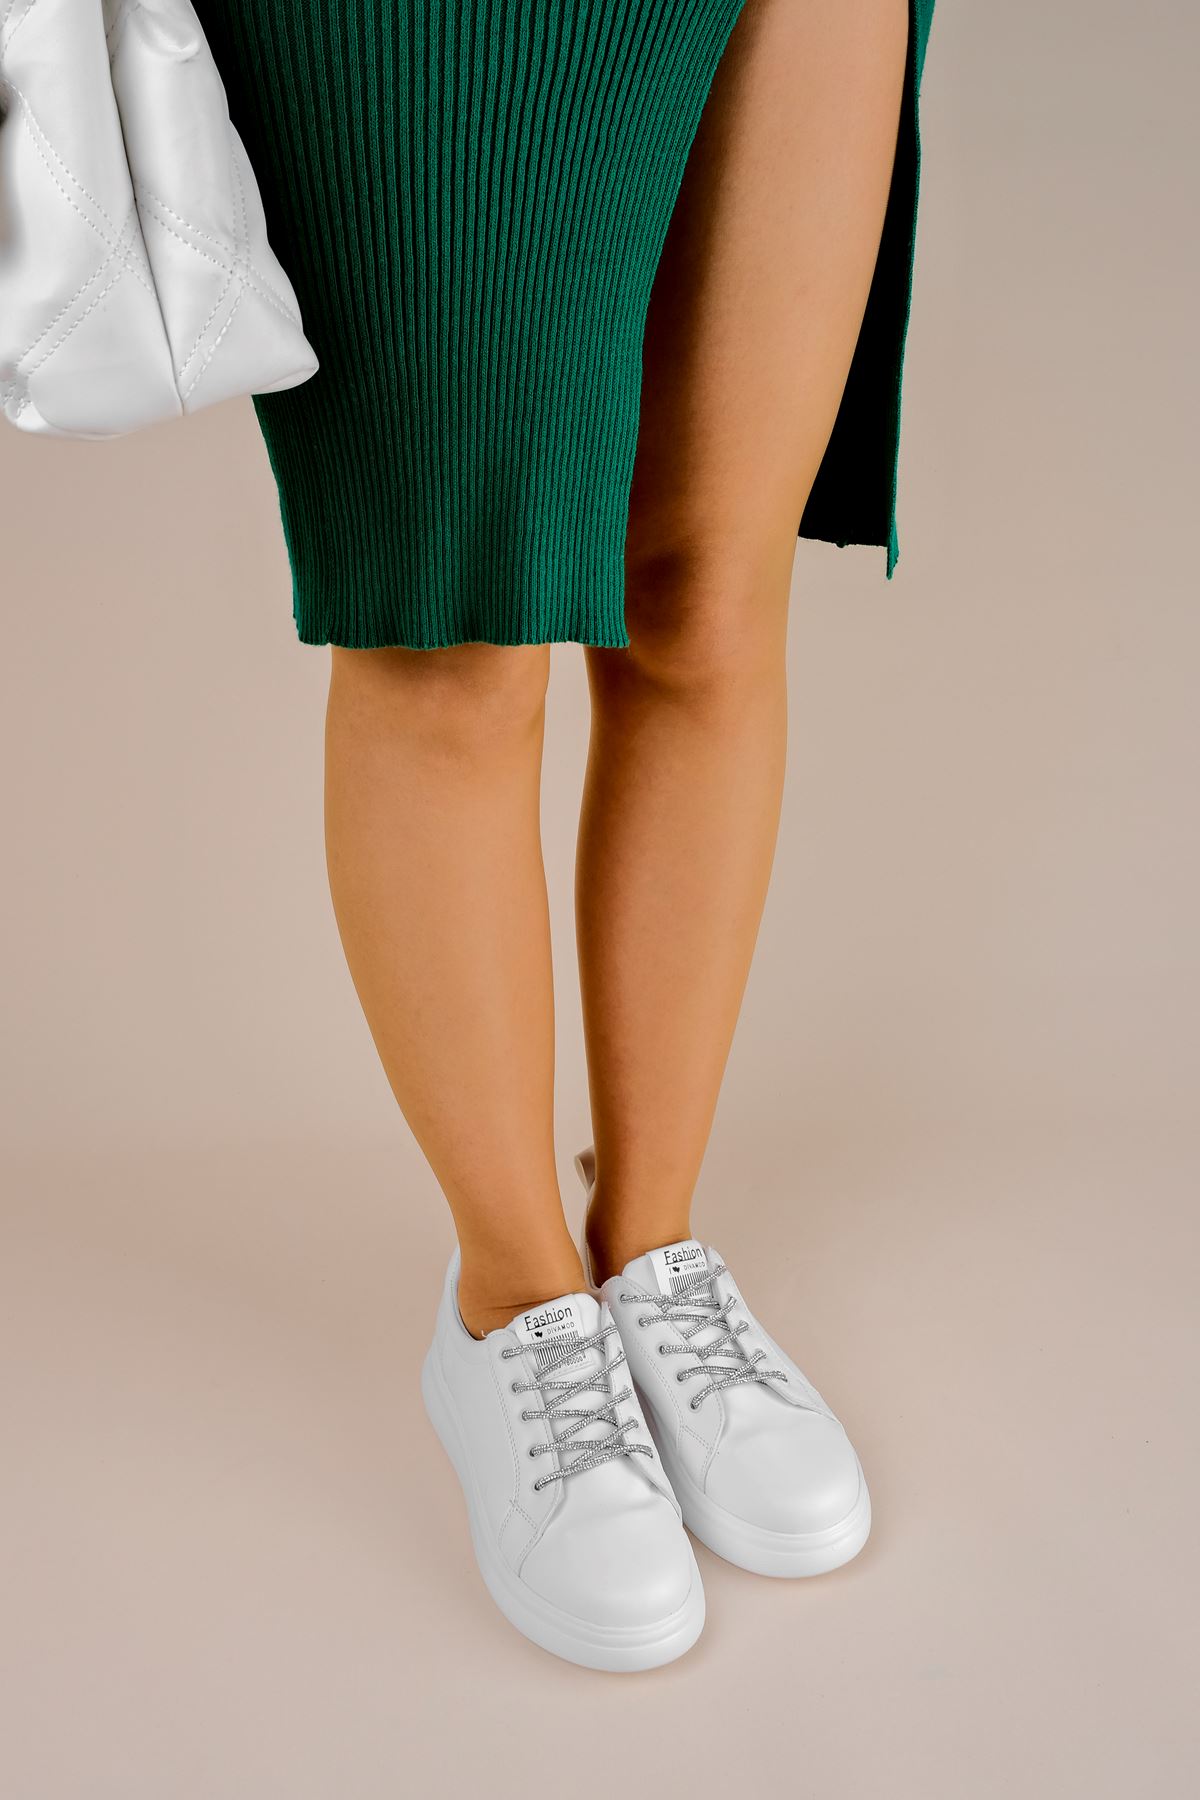 Belen Kadın Spor Ayakkabı Bağcık Parlak Taşlı-beyaz